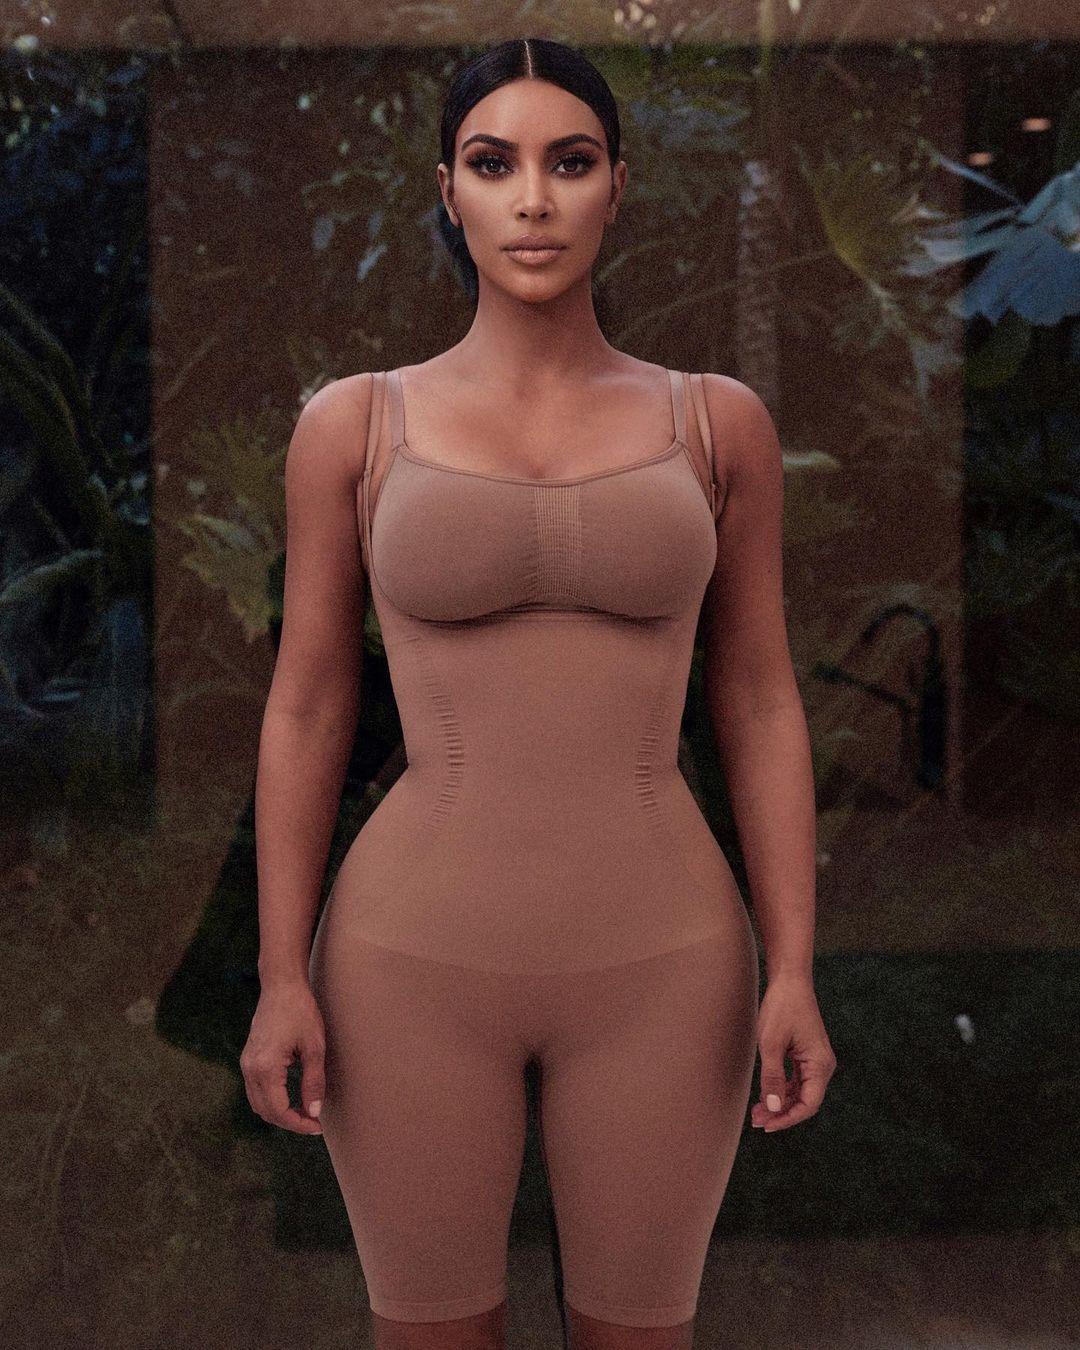 Kim Kardashian nổi tiếng với vóc dáng 'đồng hồ cát' nhờ việc diện những bộ đồ lót định hình bên trong trang phục.